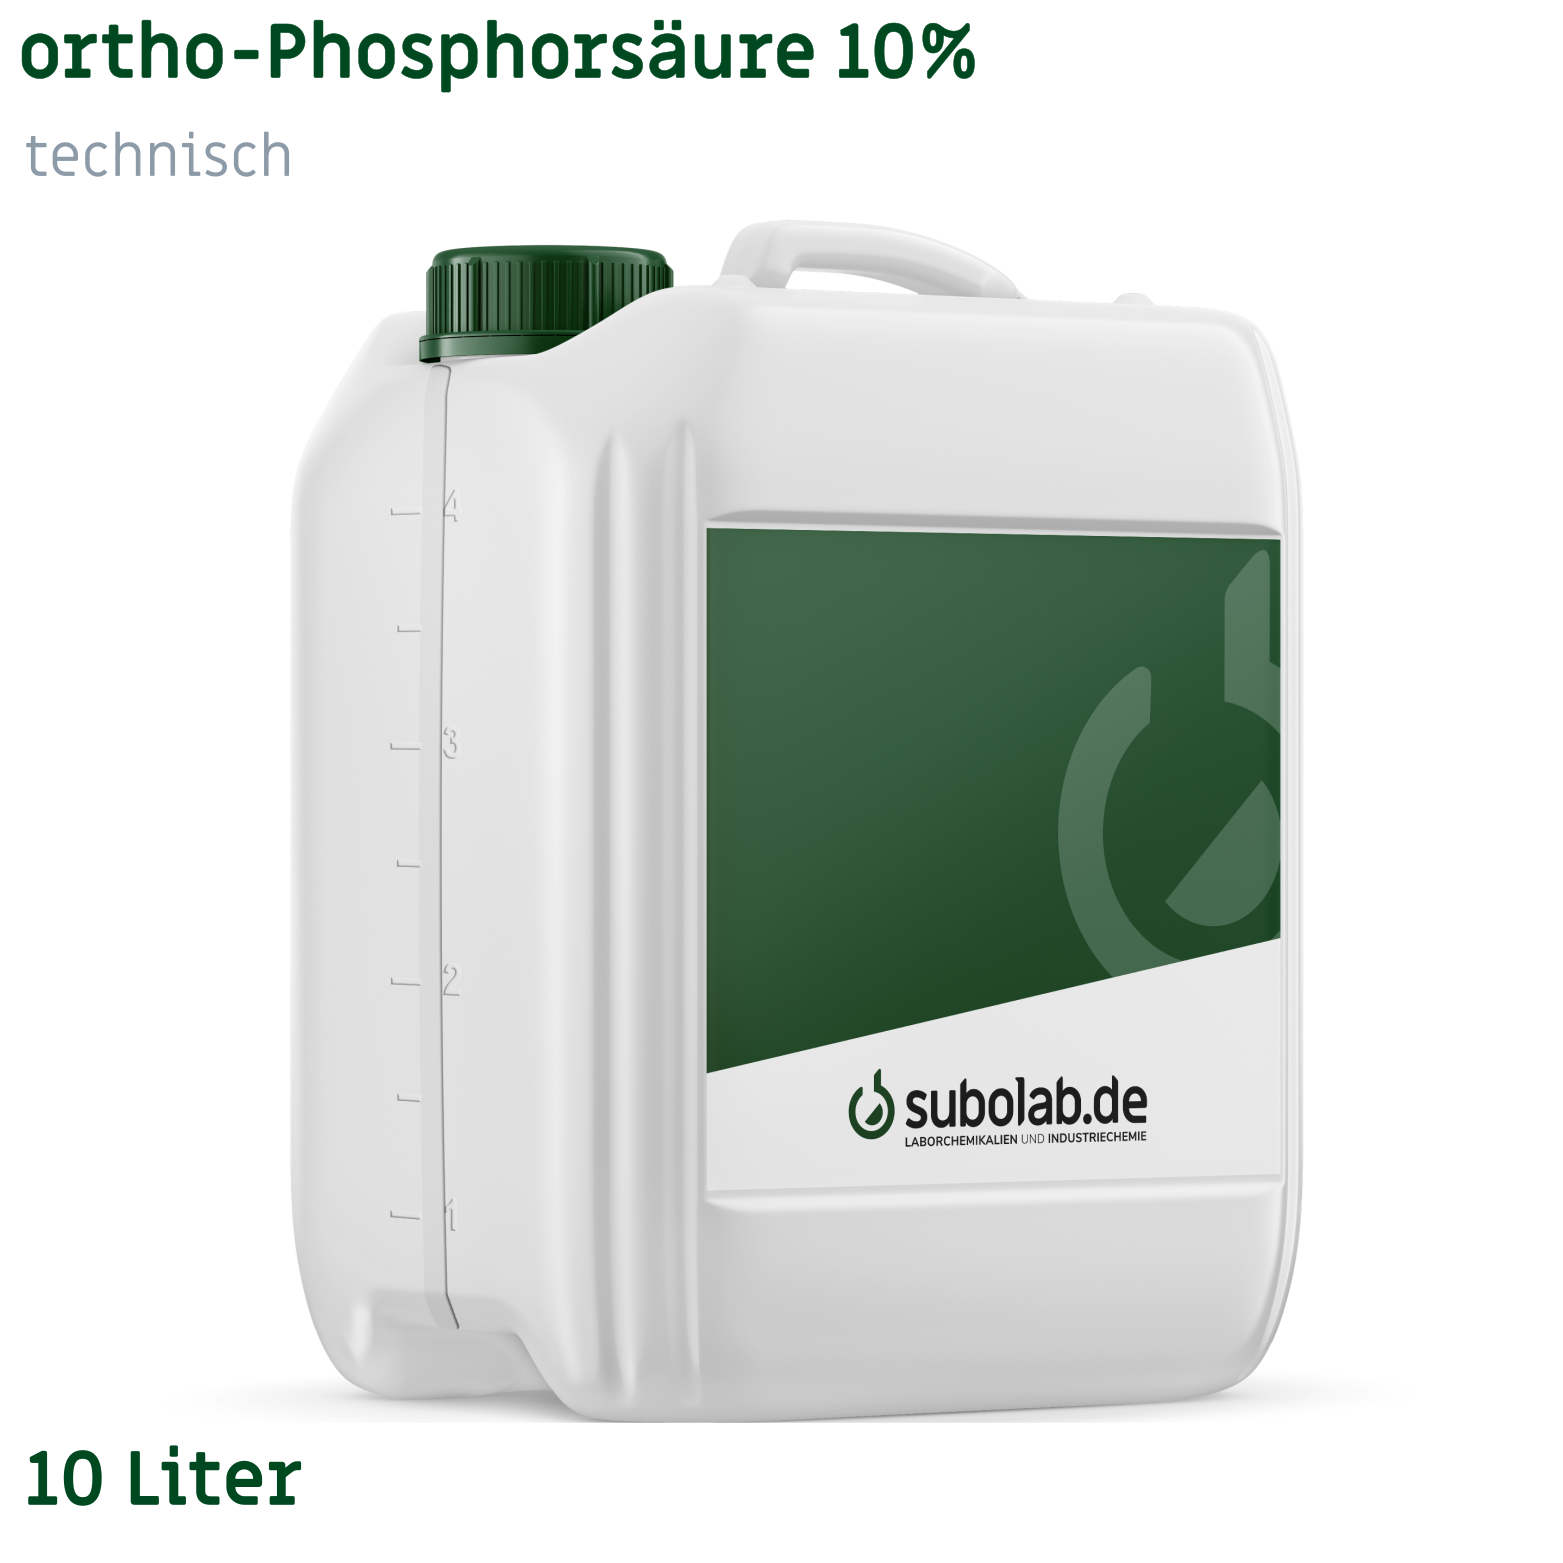 Bild von ortho-Phosphorsäure 10% technisch (10 Liter)